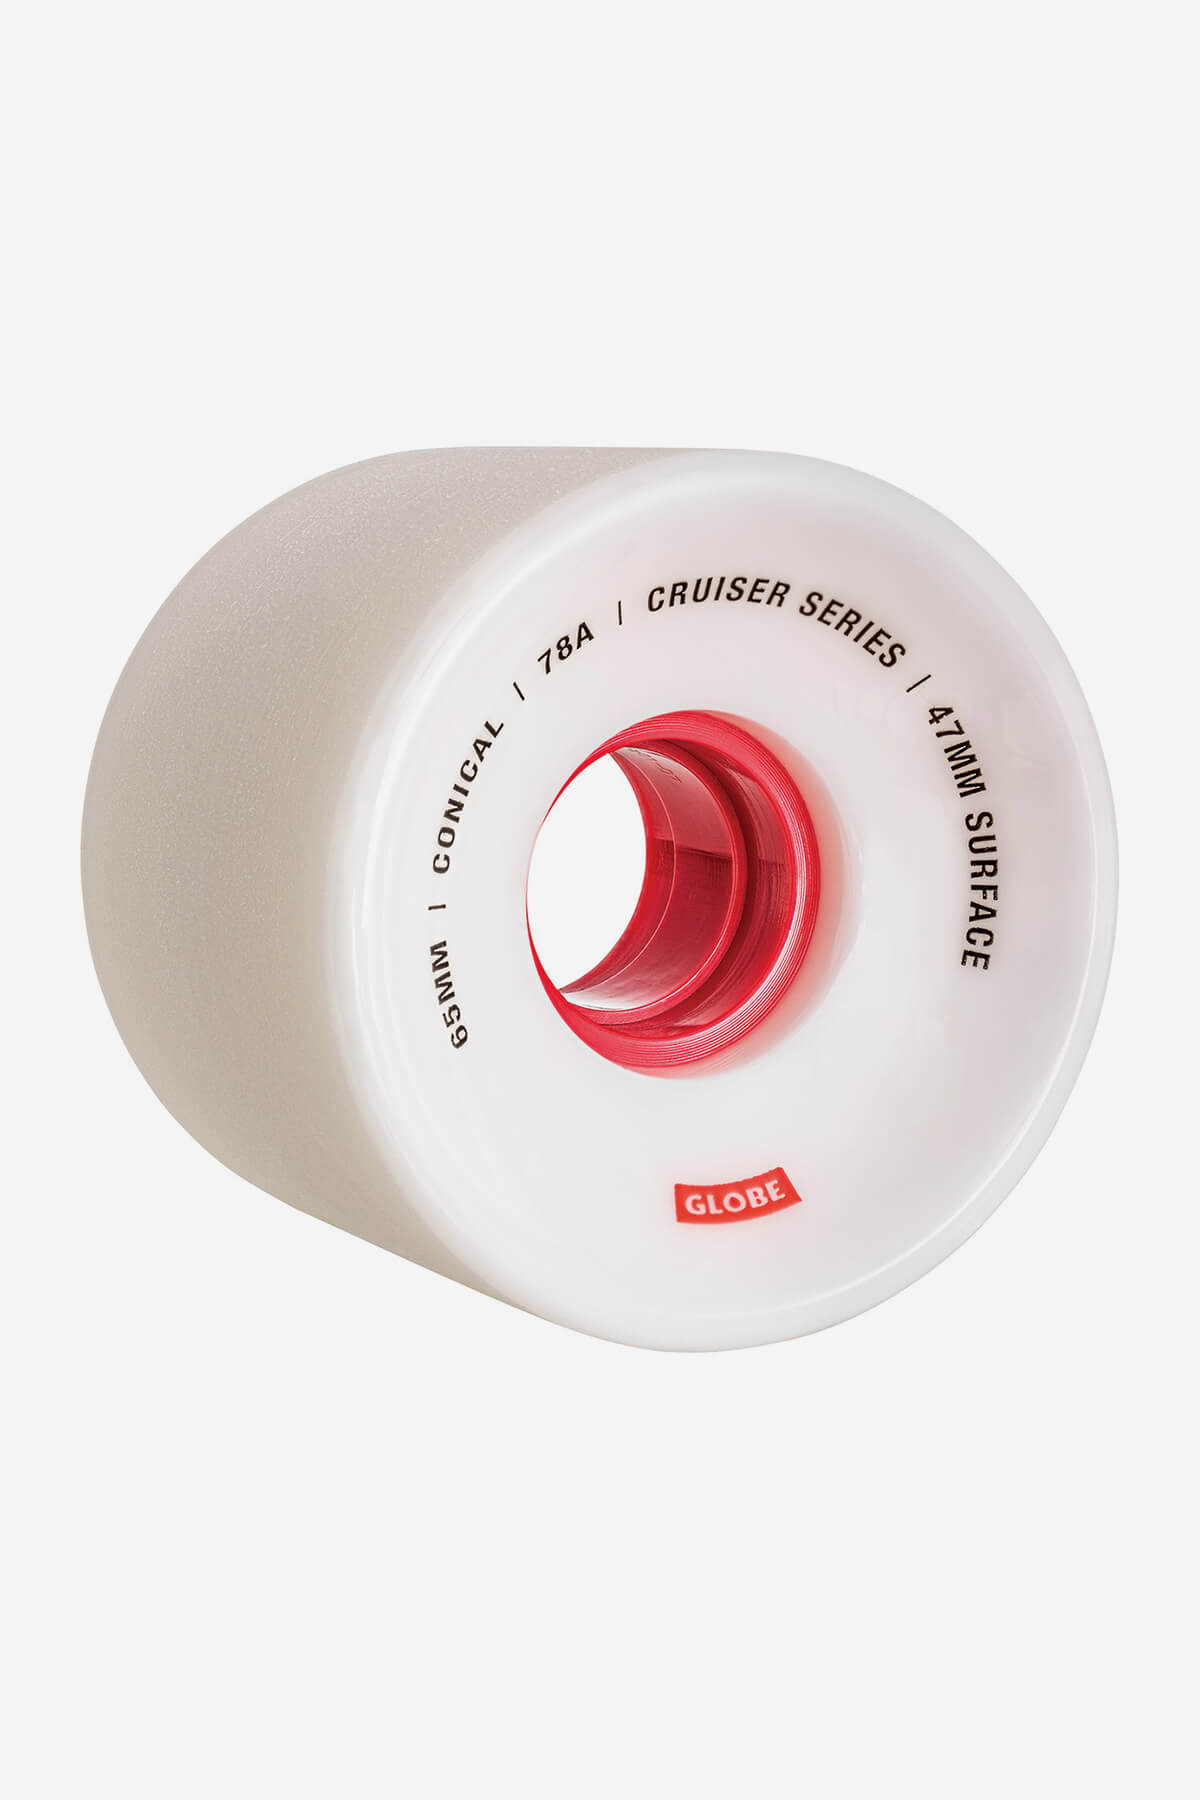 Globe Rollen Konisch Cruiser Skateboard  Wheel  65mm in White/Red/65